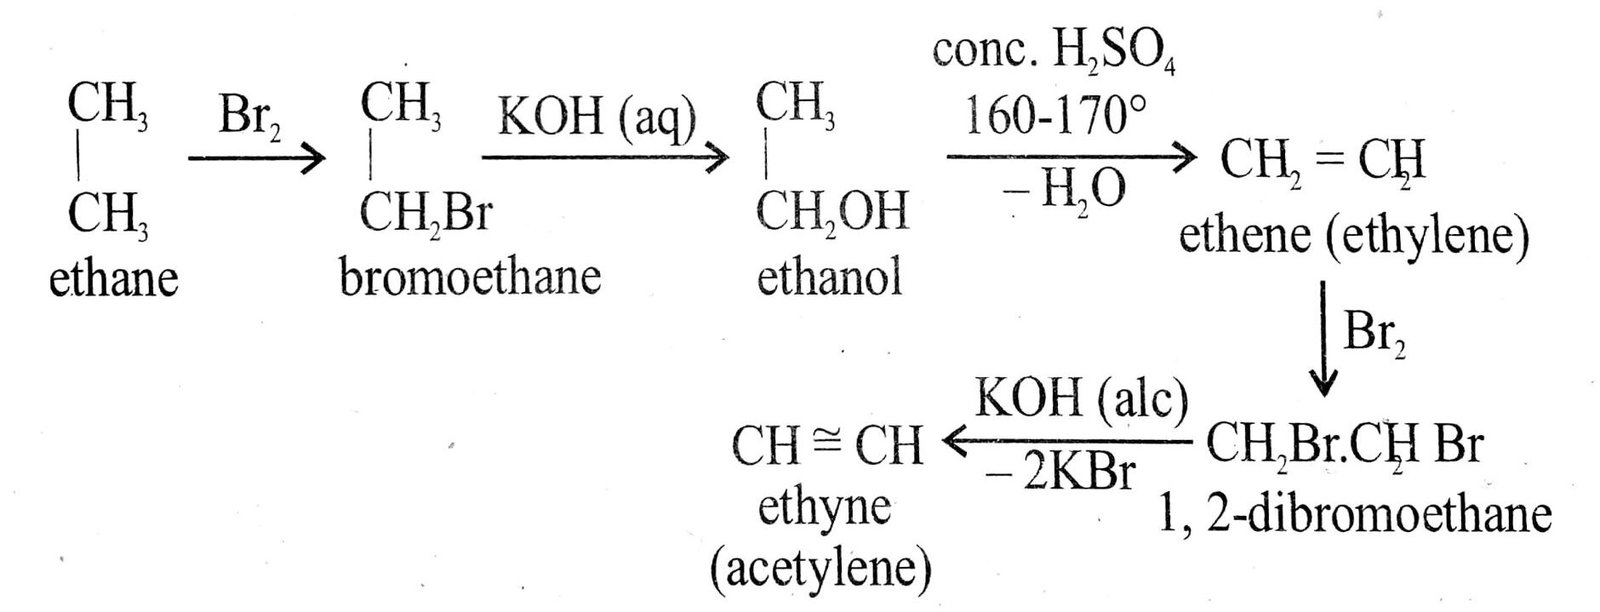 Ethane to Ethene (Ethylene) and then to Ethyne (Acetylene)